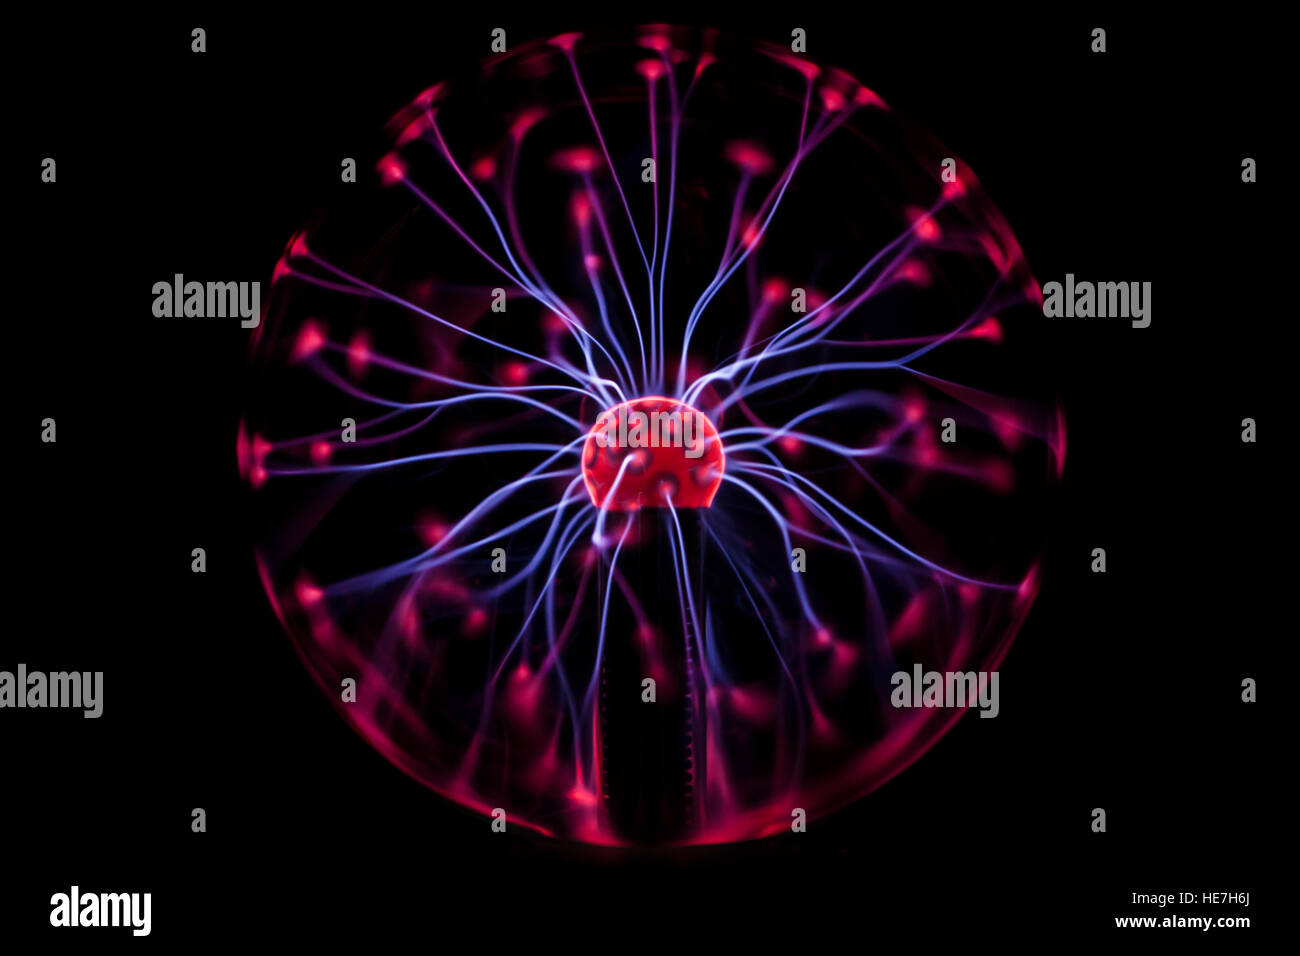 Boule de plasma rayons x dans le noir Banque D'Images